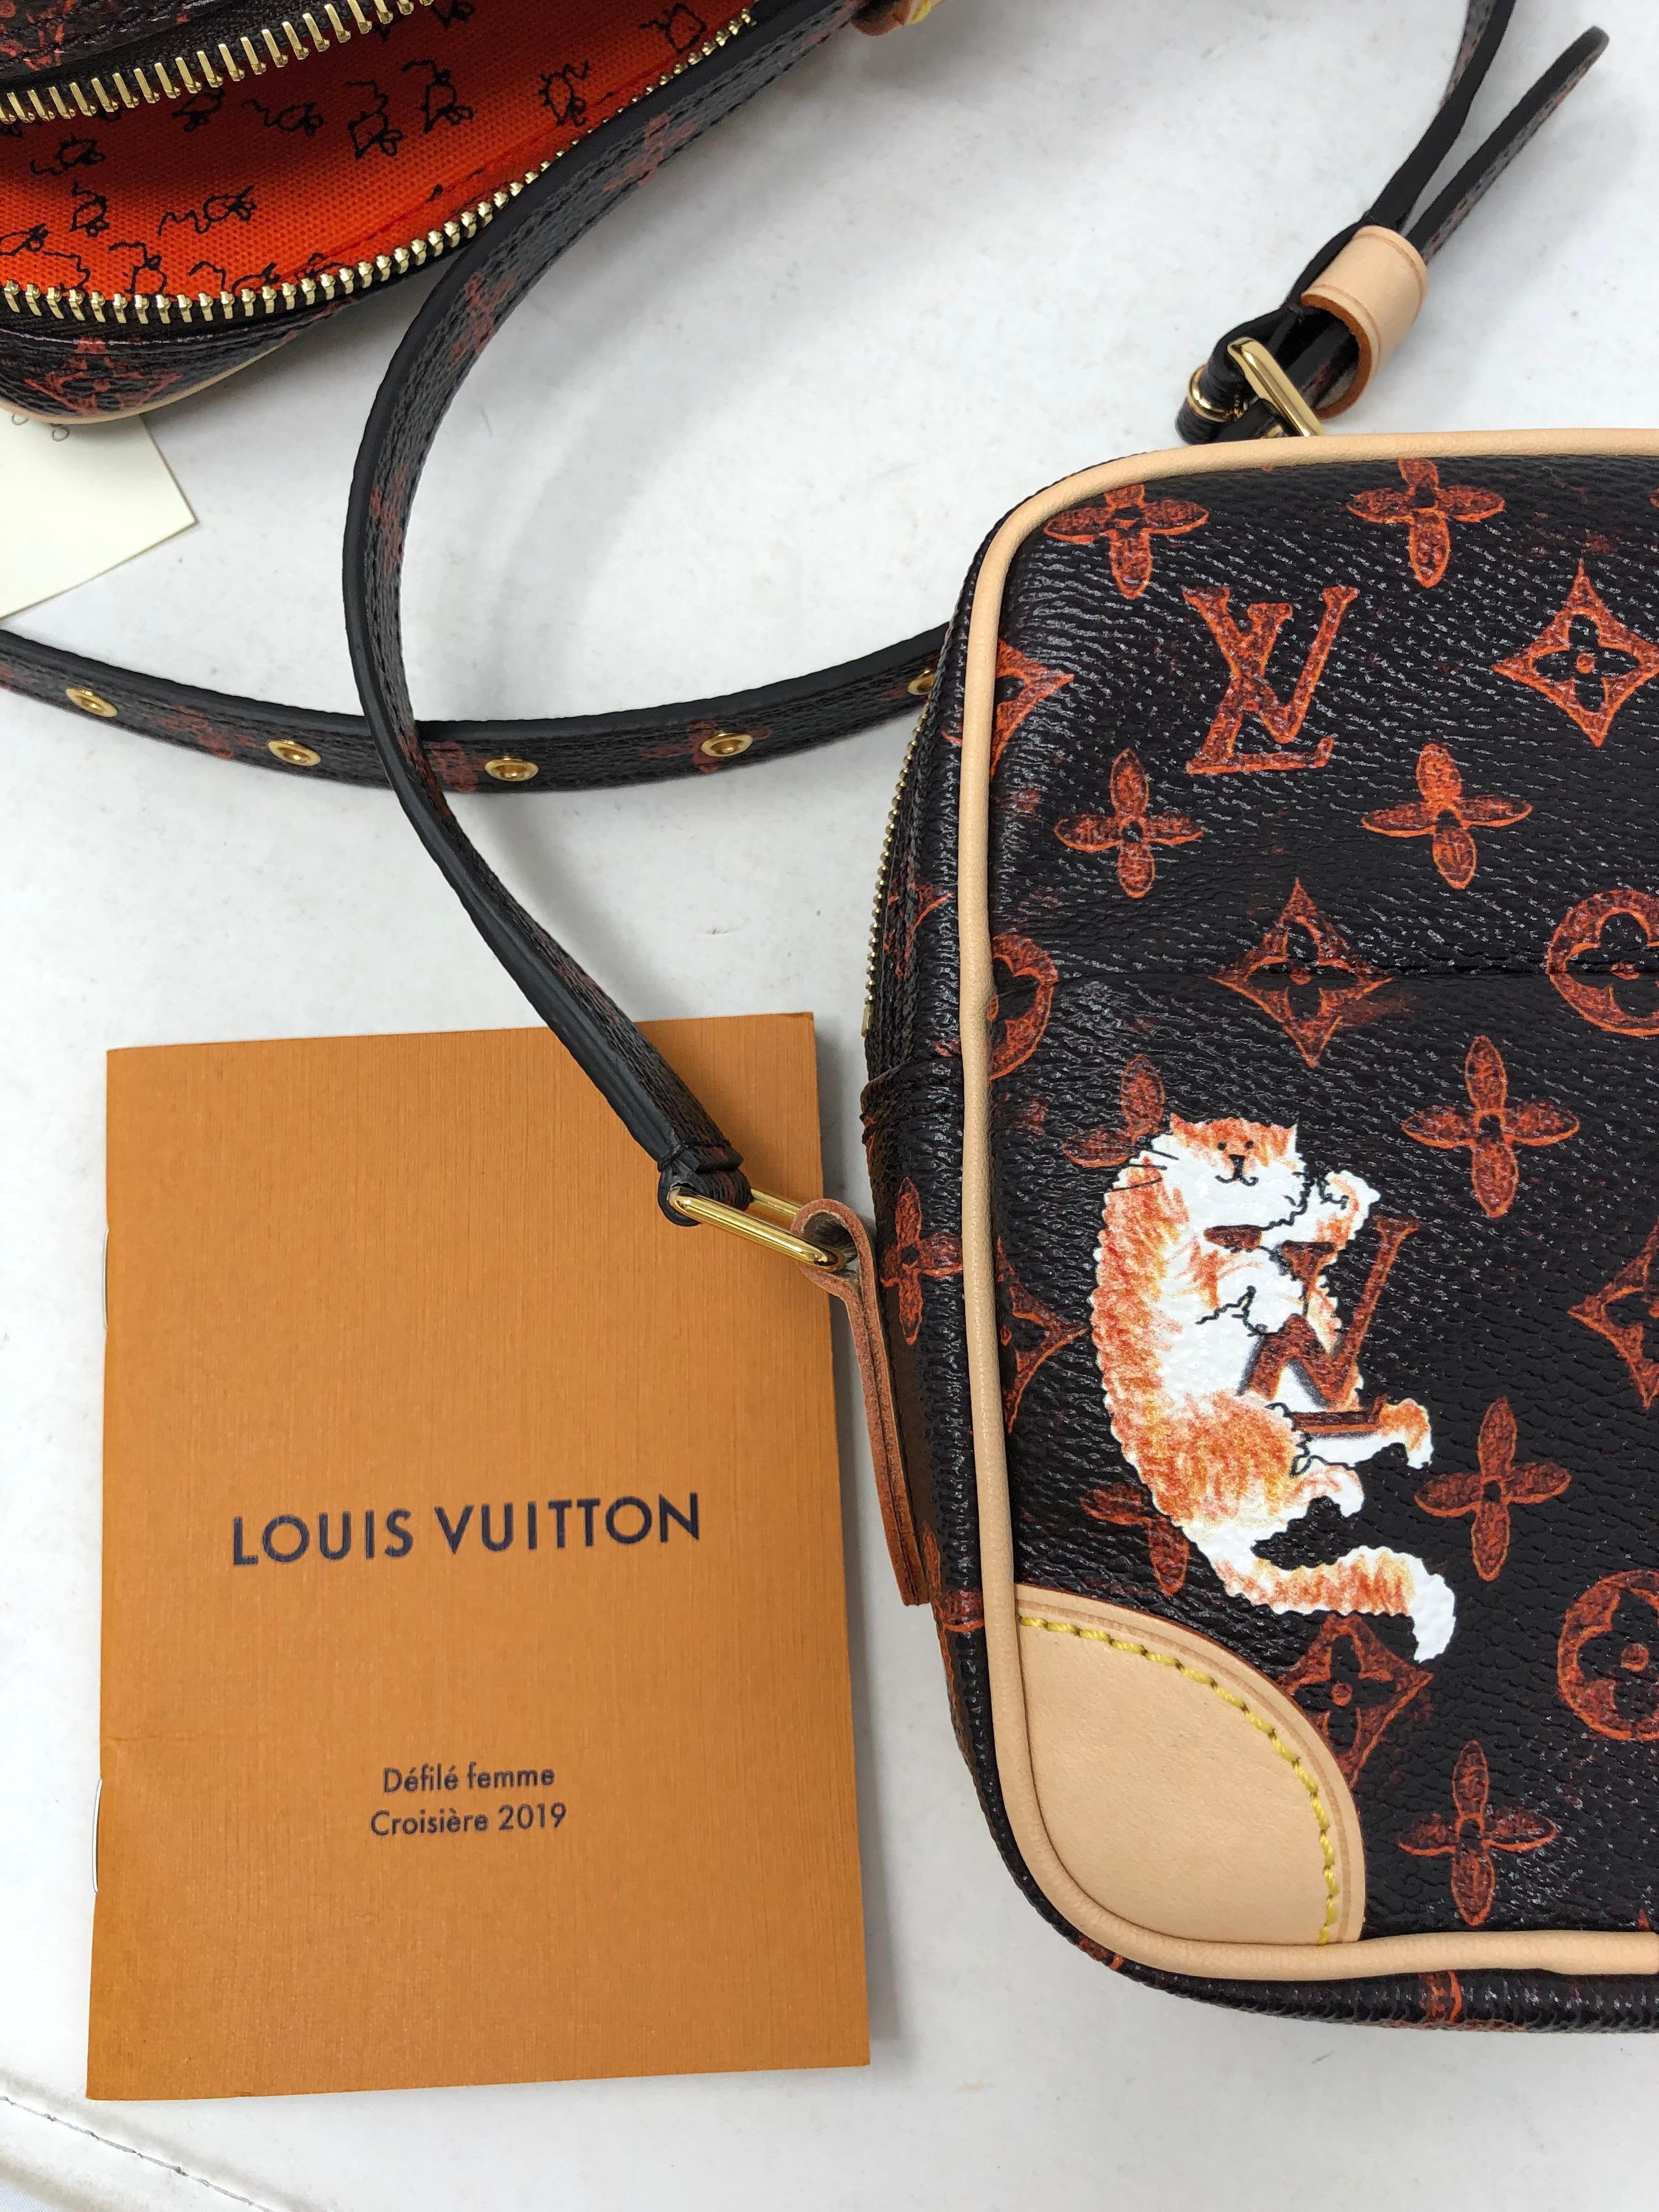 Louis Vuitton Transformed Monogram Catogram Grace Coddington  11